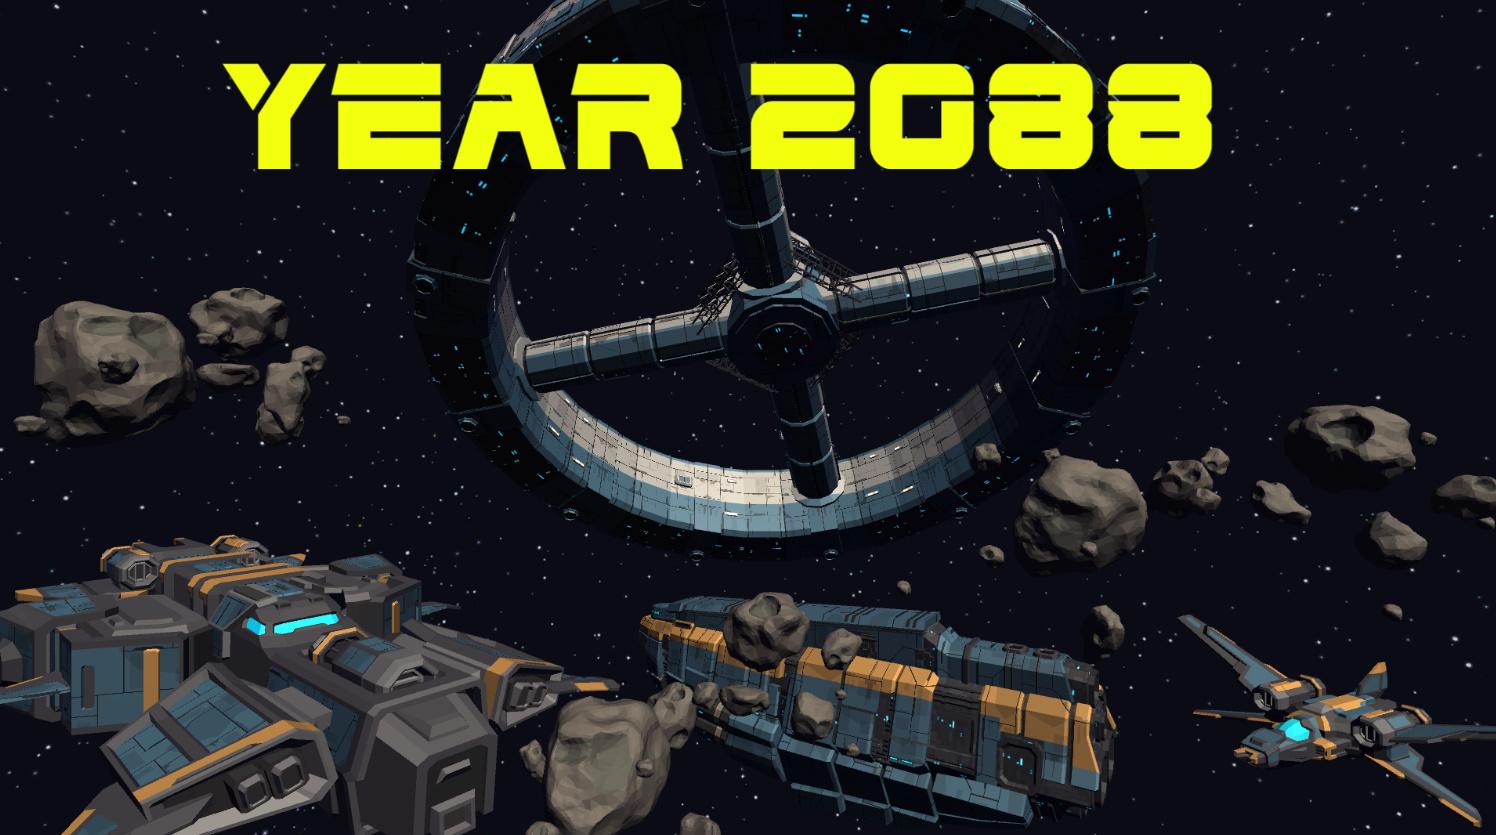 Year 2088 0.1 Screenshot 6